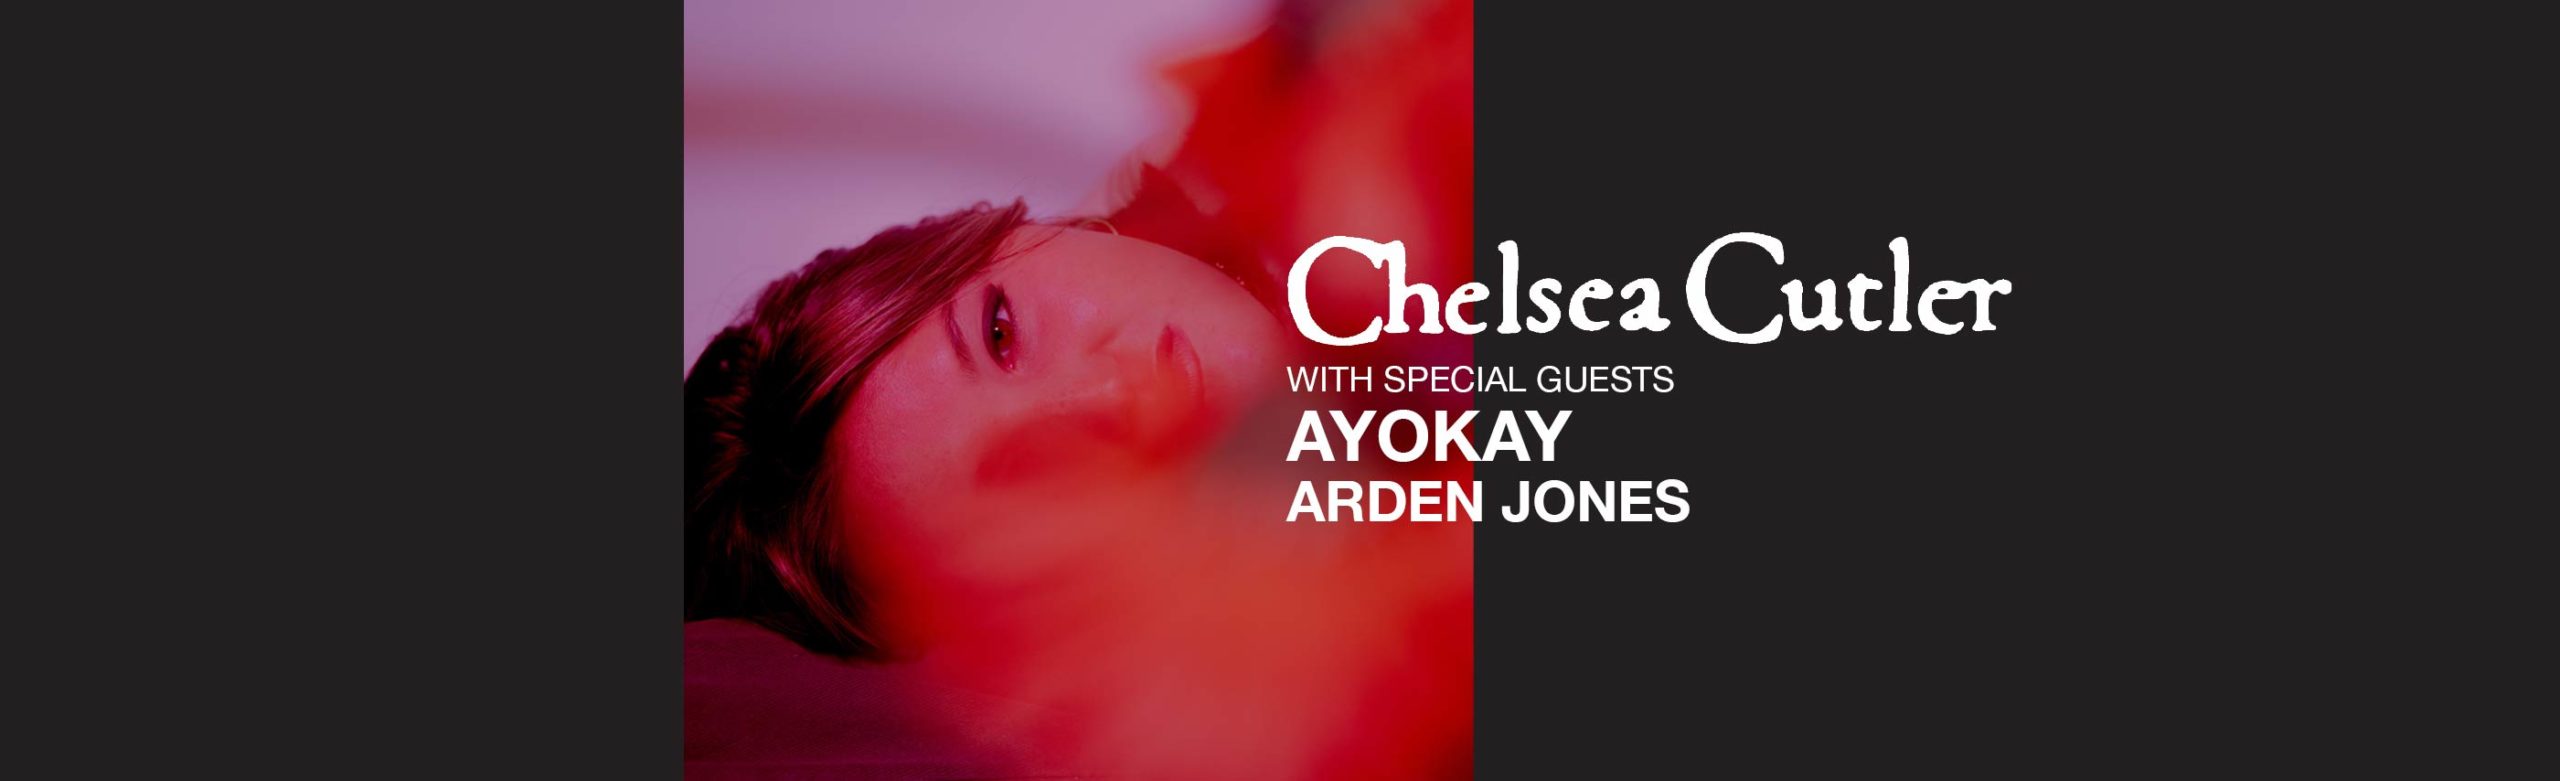 Chelsea Cutler Announces Concert in Bozeman with Ayokay & Arden Jones Image